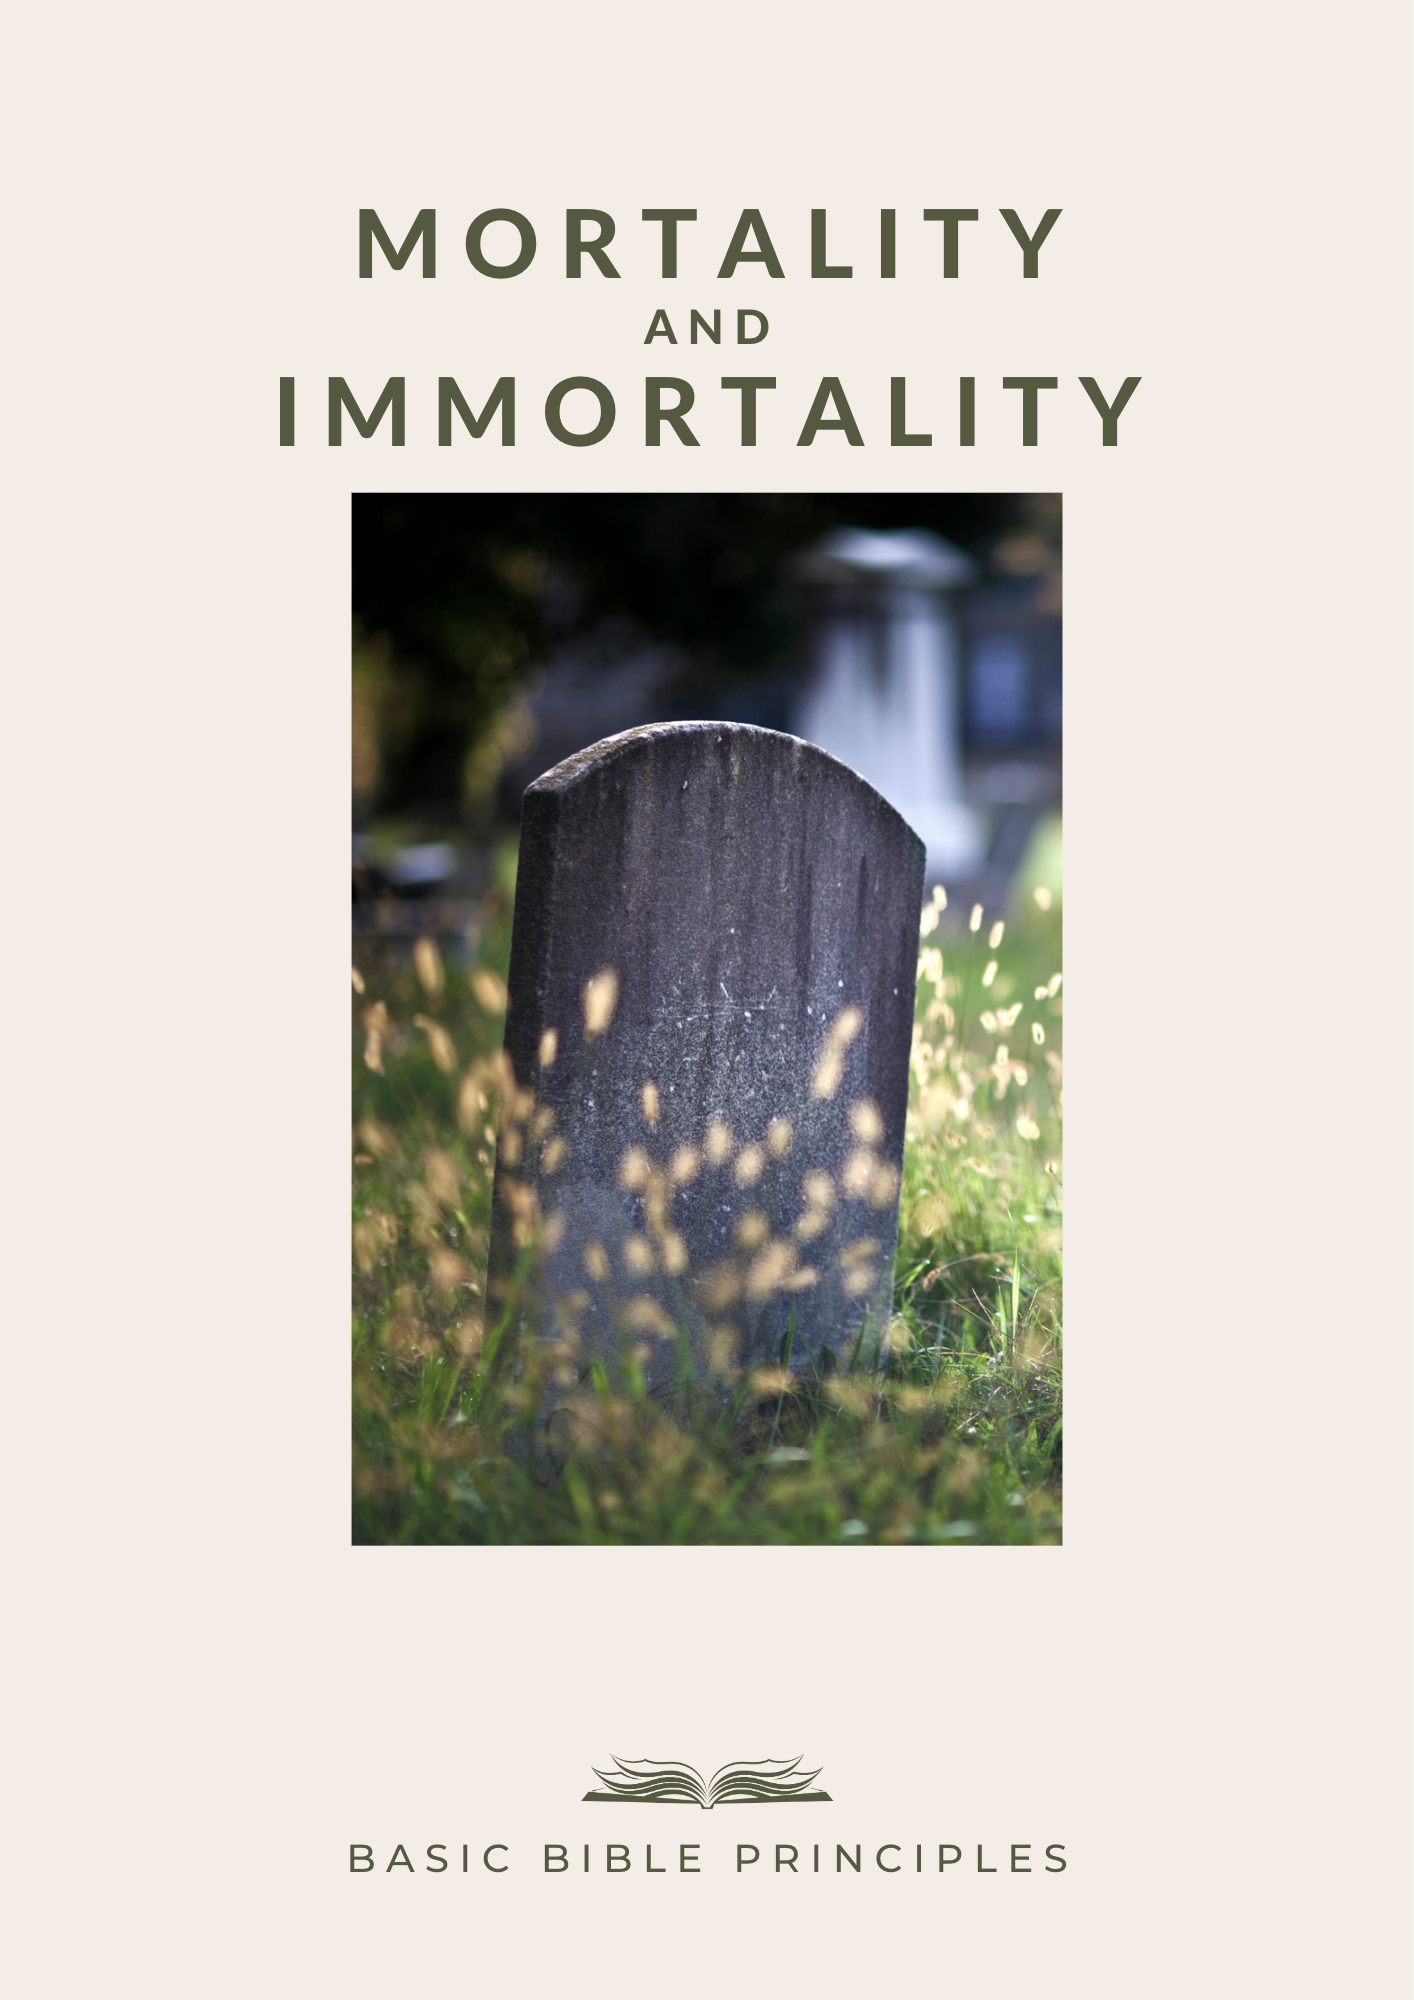 Basic Bible Principles: MORTALITY AND IMMORTALITY